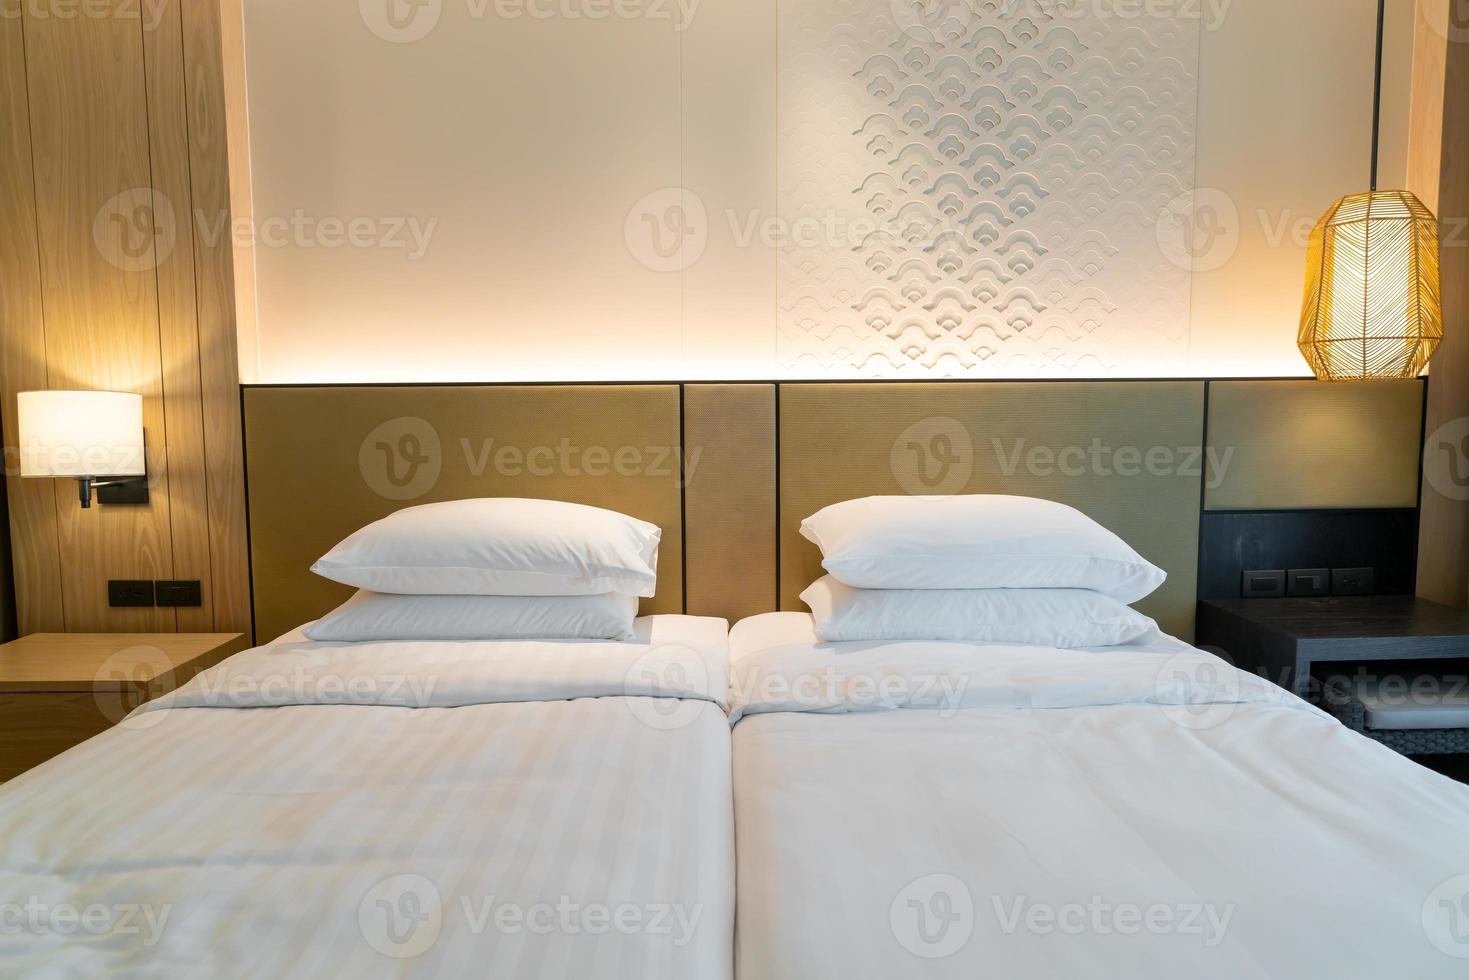 décoration d'oreiller blanc sur le lit dans la chambre de l'hôtel photo